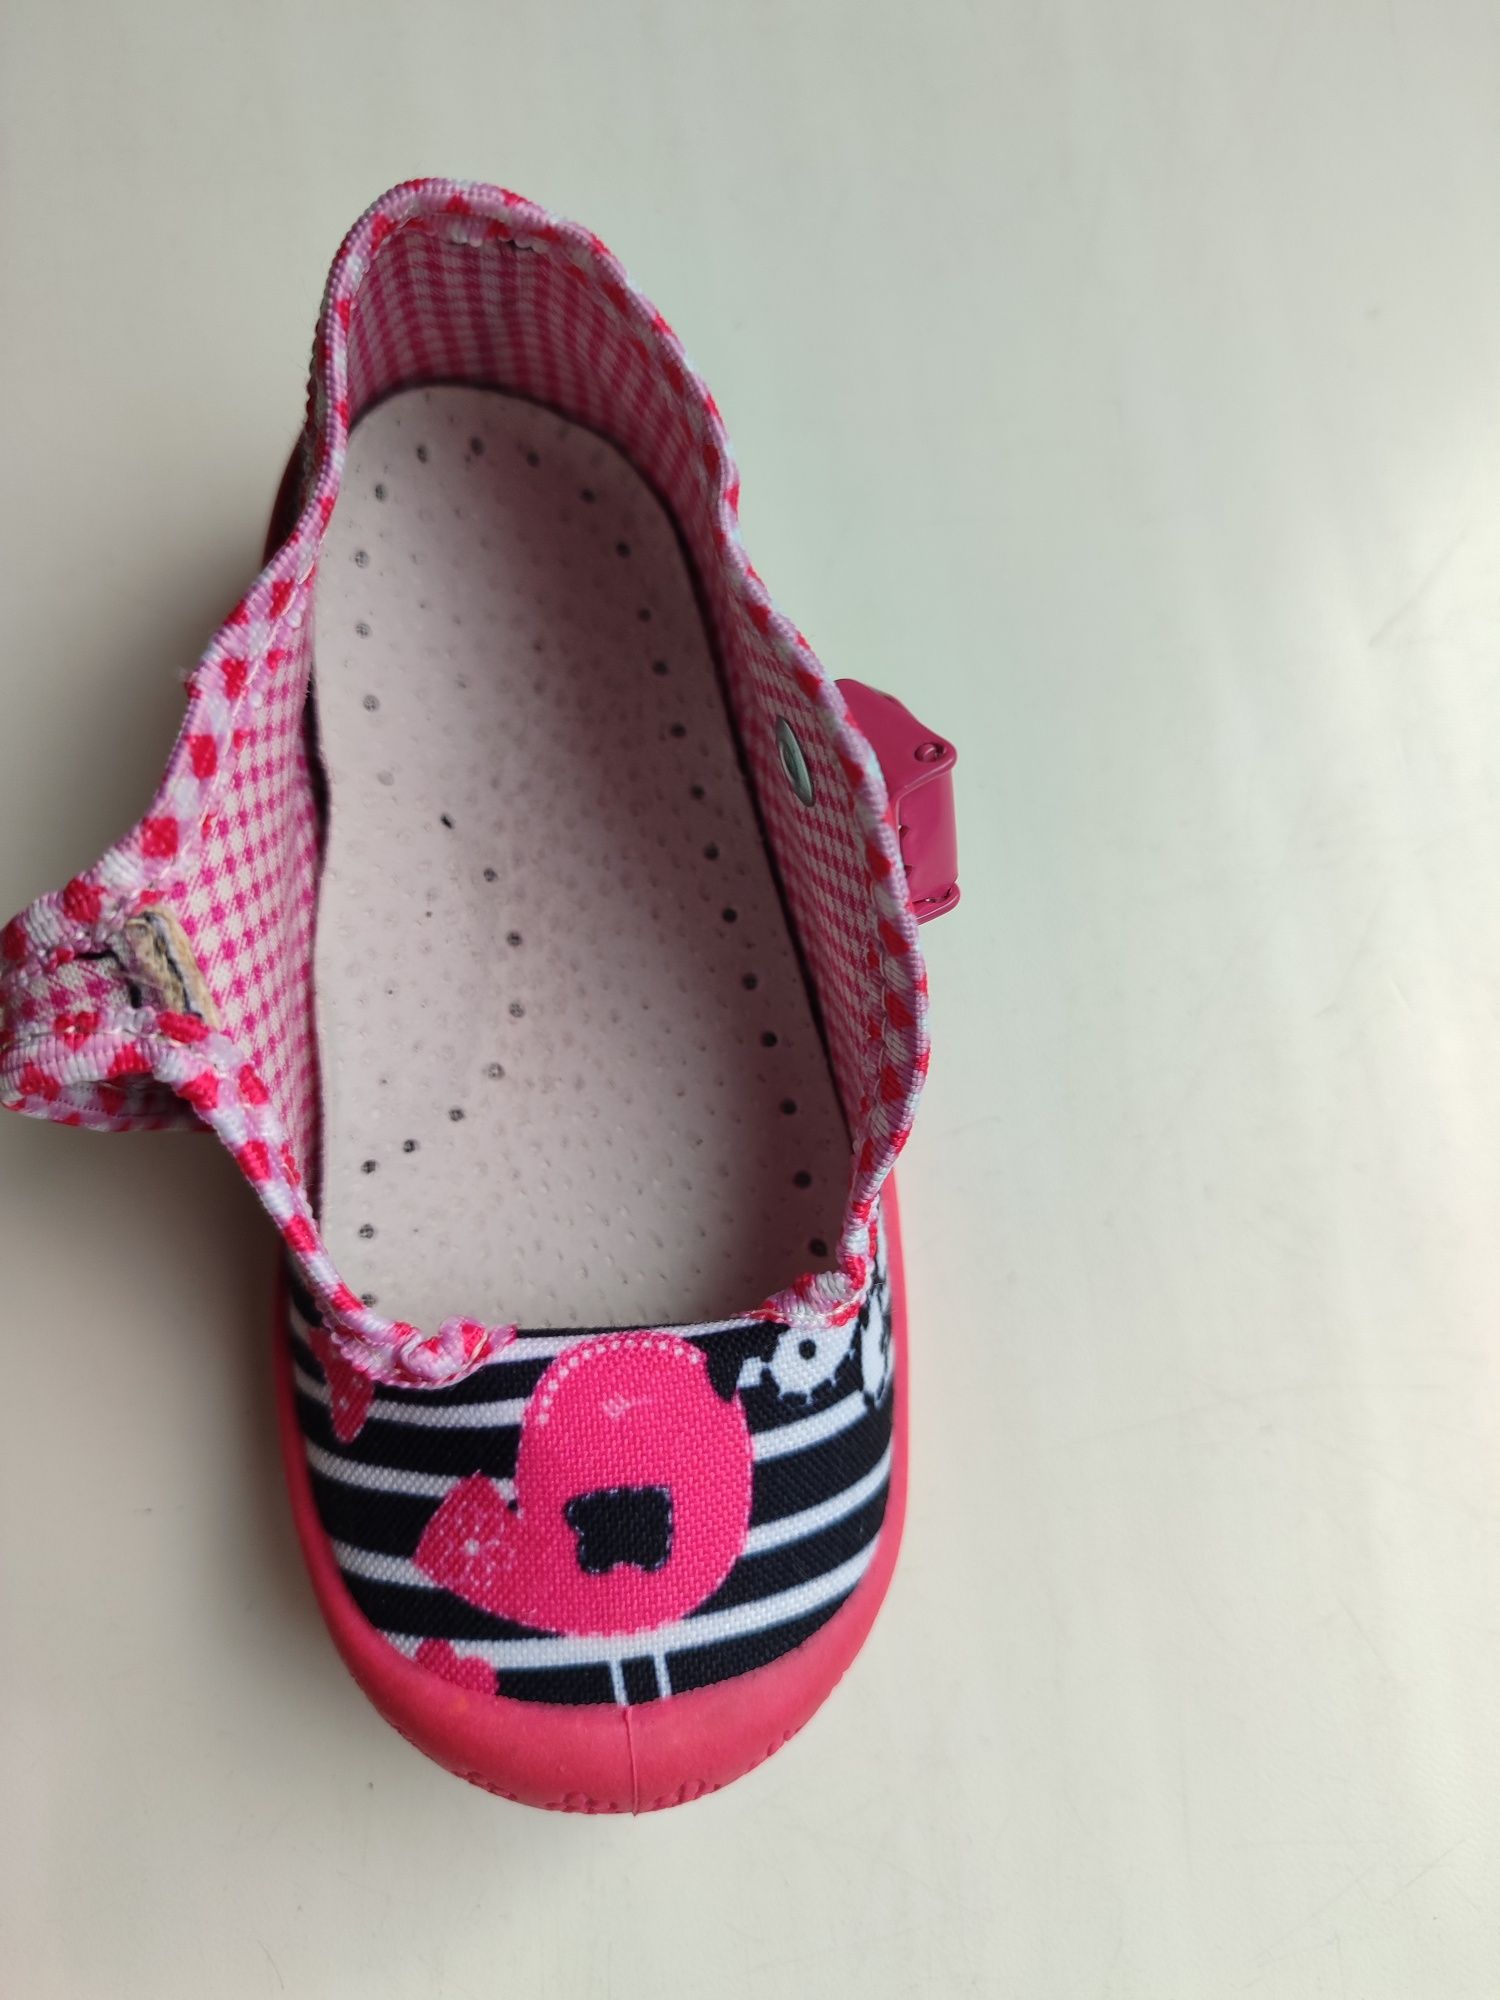 Предлагаем туфельки для девочек торговой марки "3F"